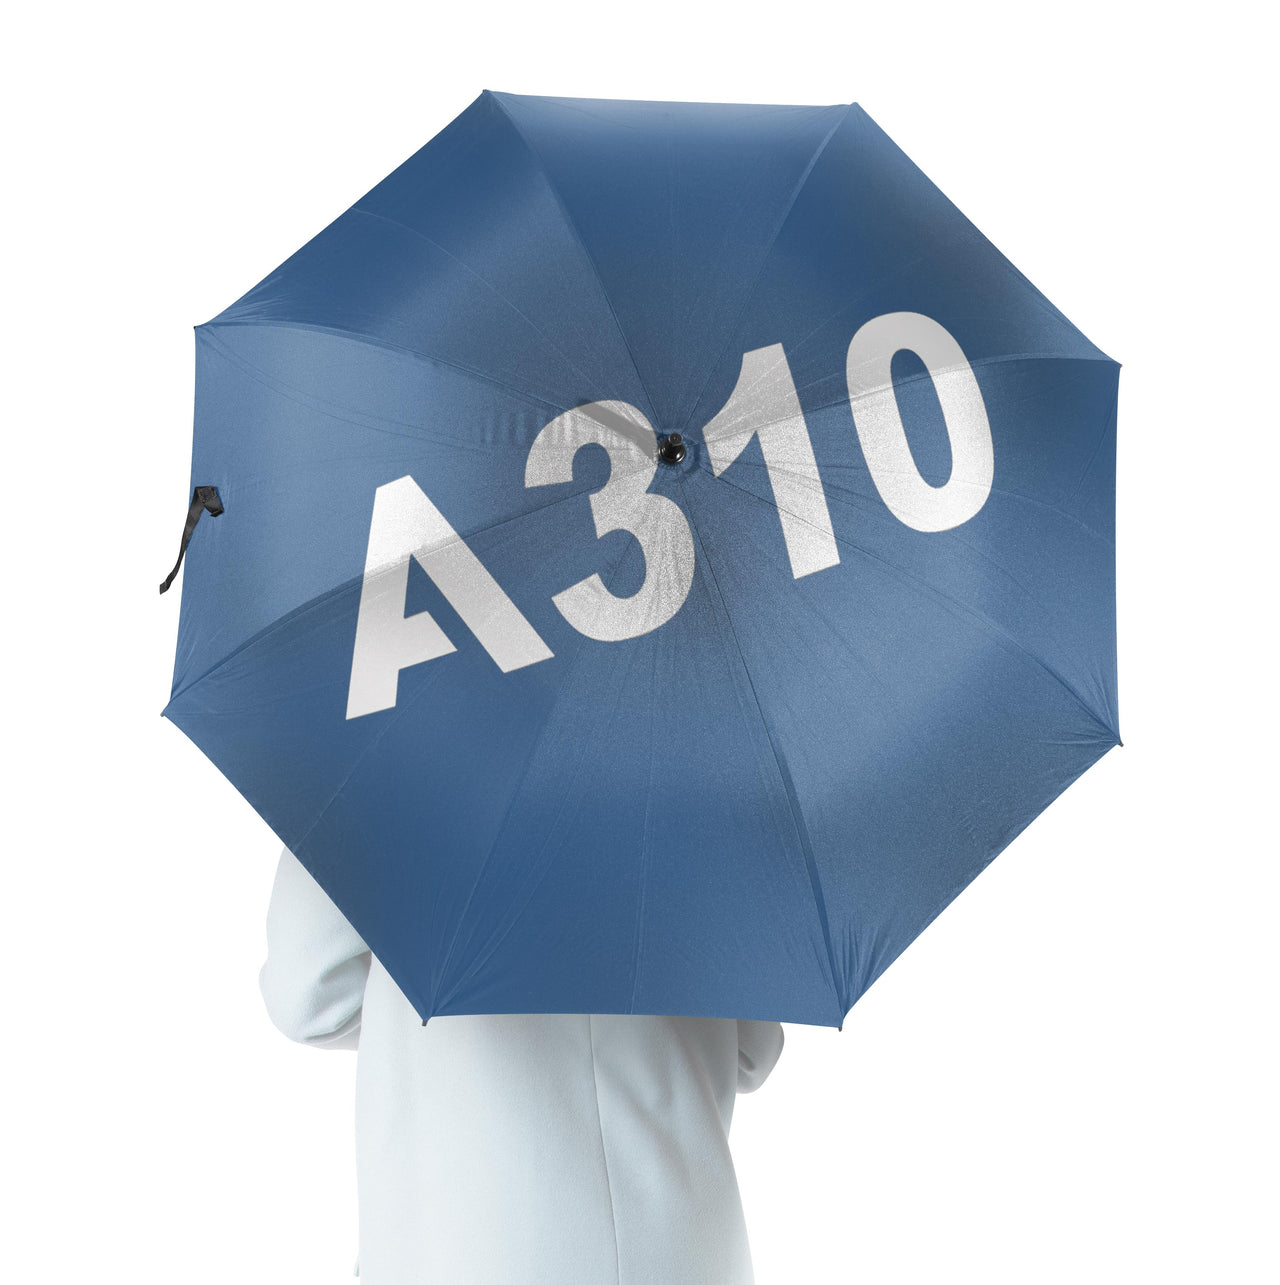 A310 Flat Text Designed Umbrella